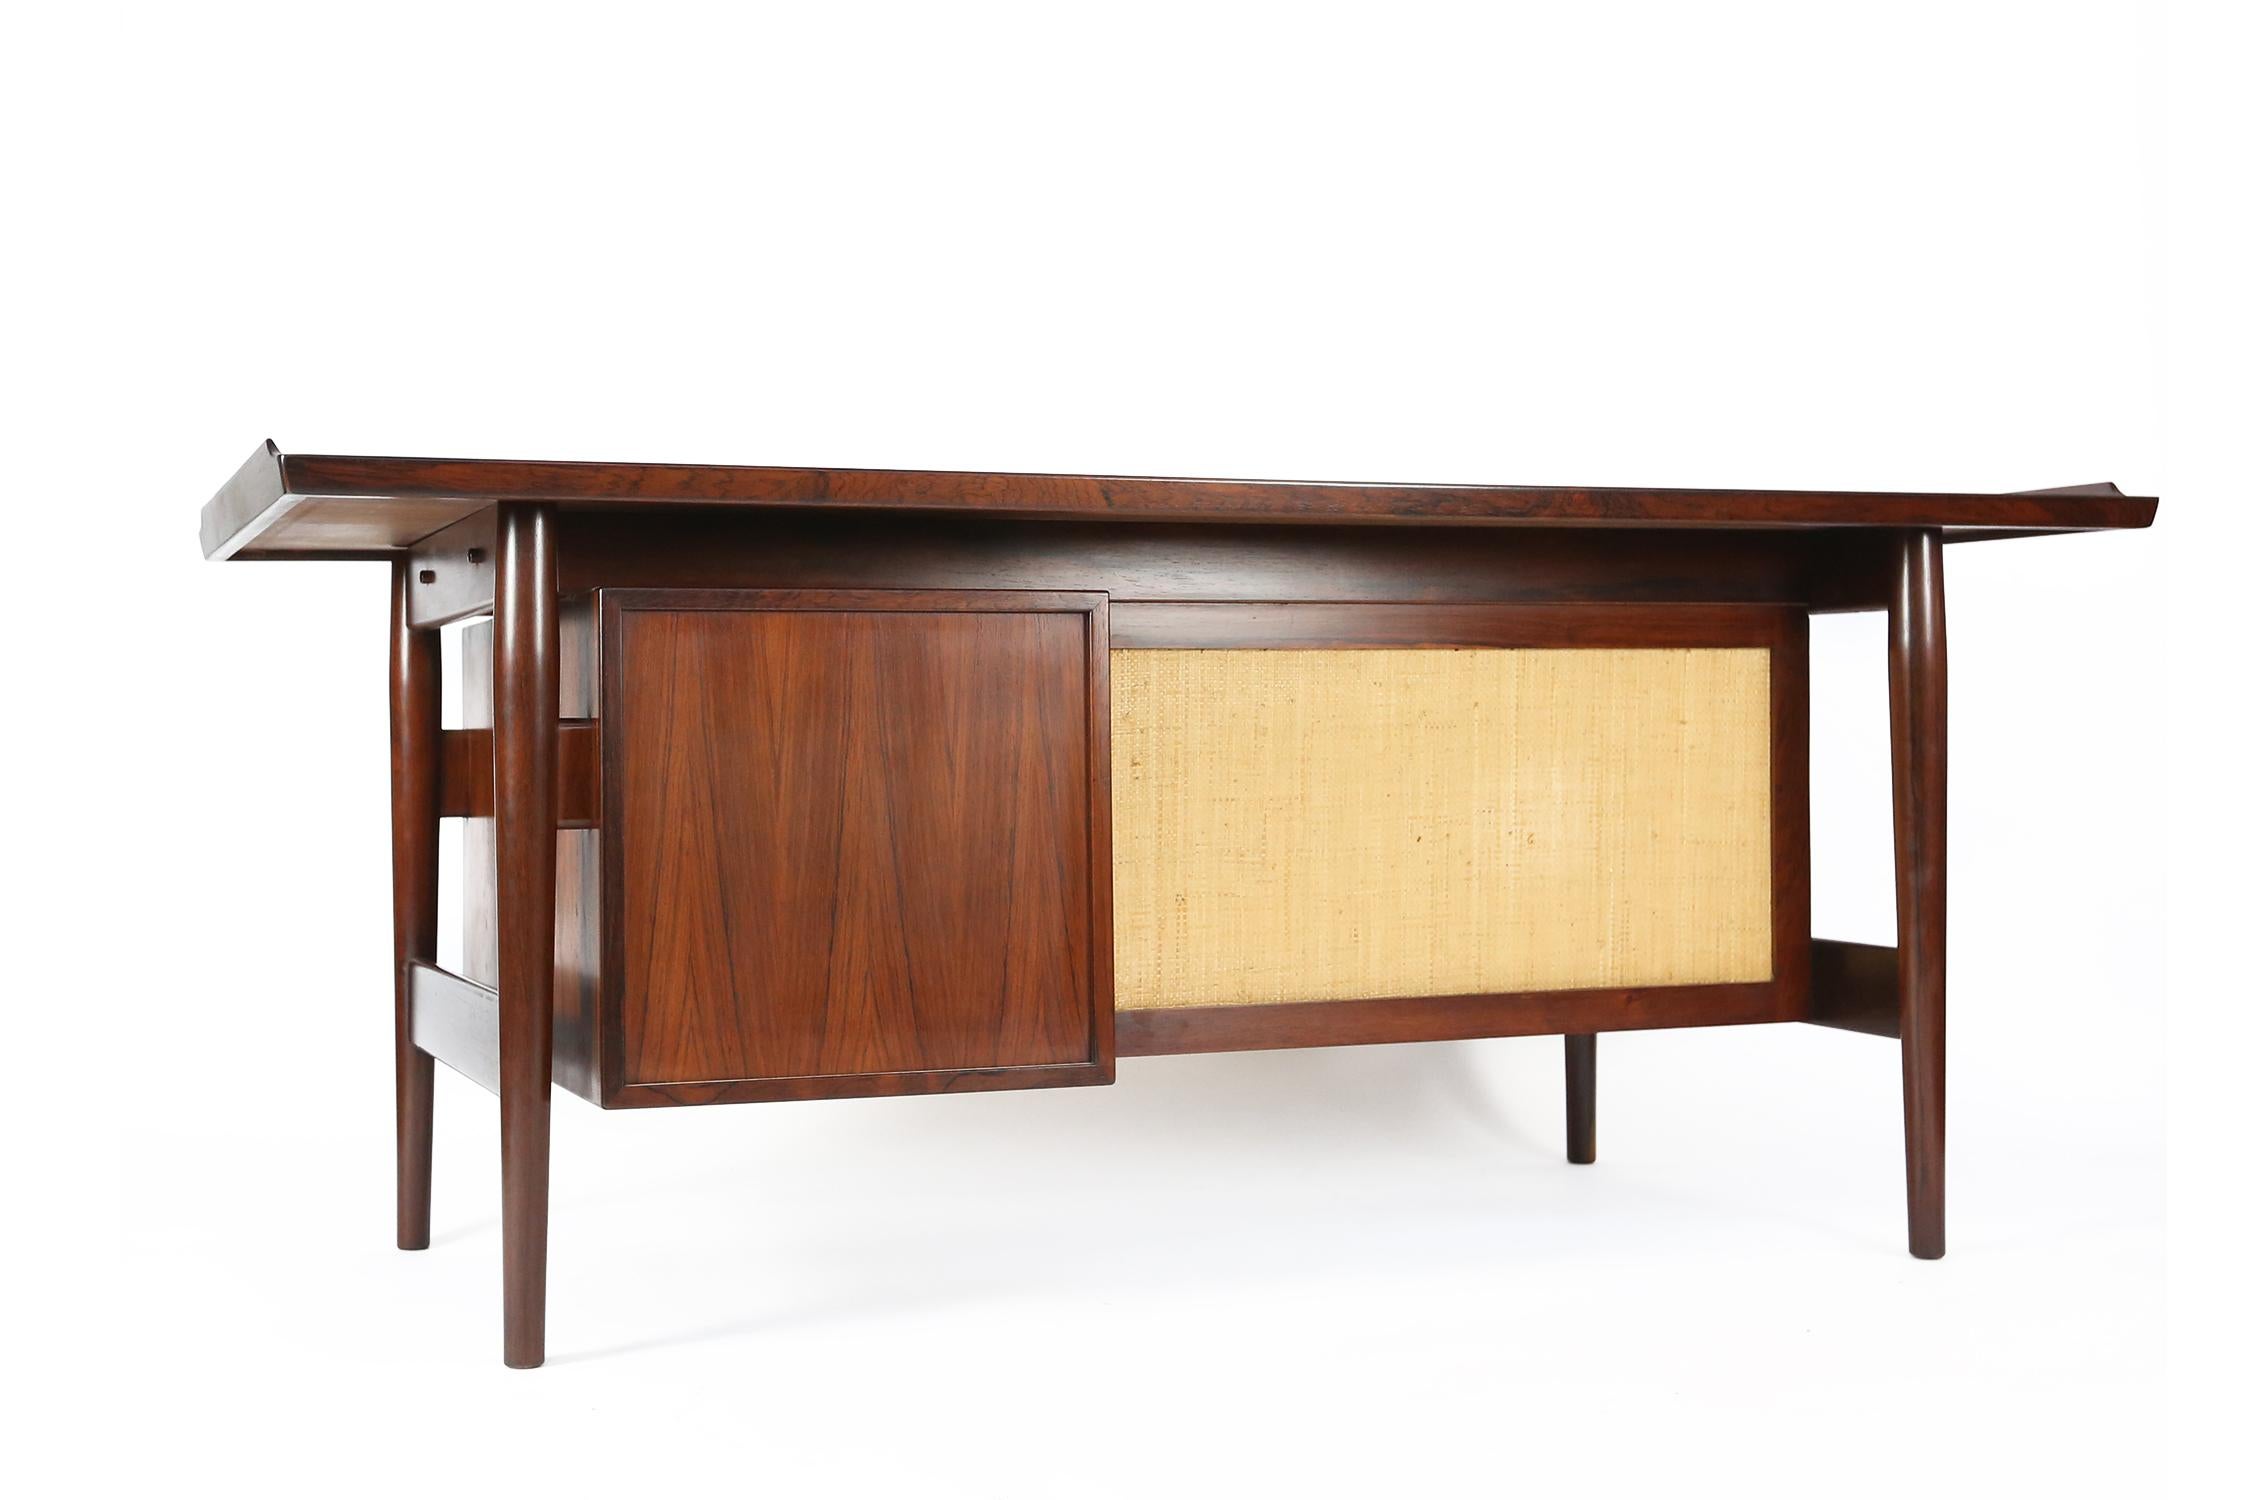 Arne Vodder Desk in Rosewood Model 205 for Sibast Møbler with Seagrass For Sale 1